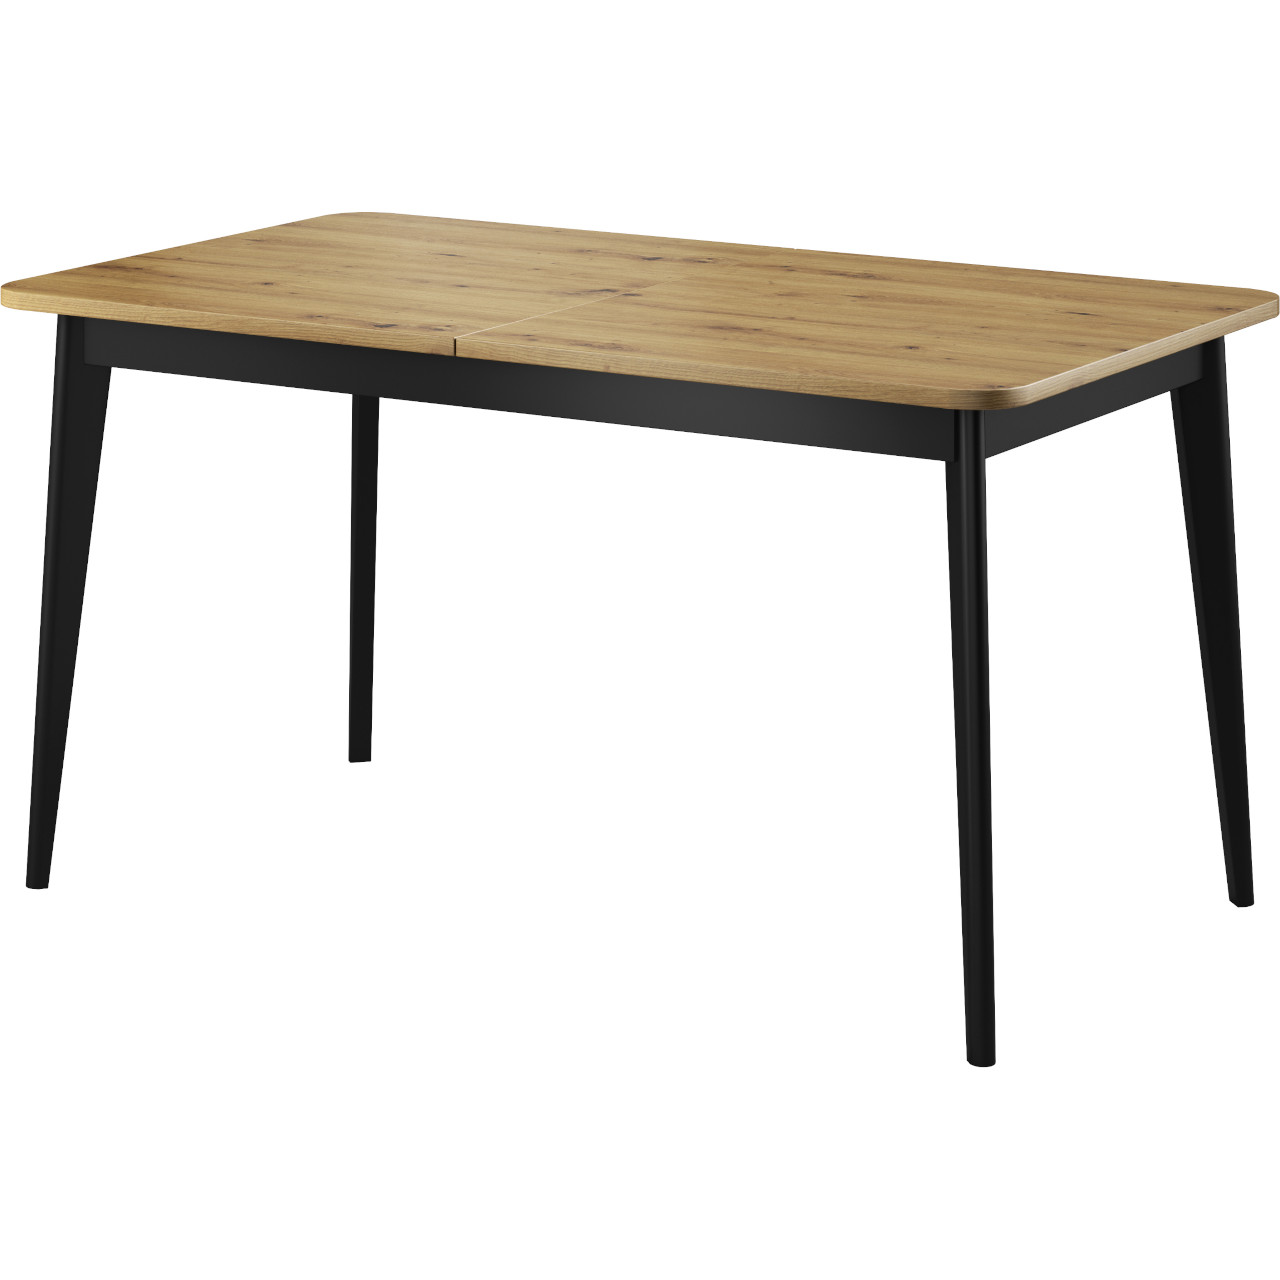 Table 140x80 NARDI 10 artisan oak / black